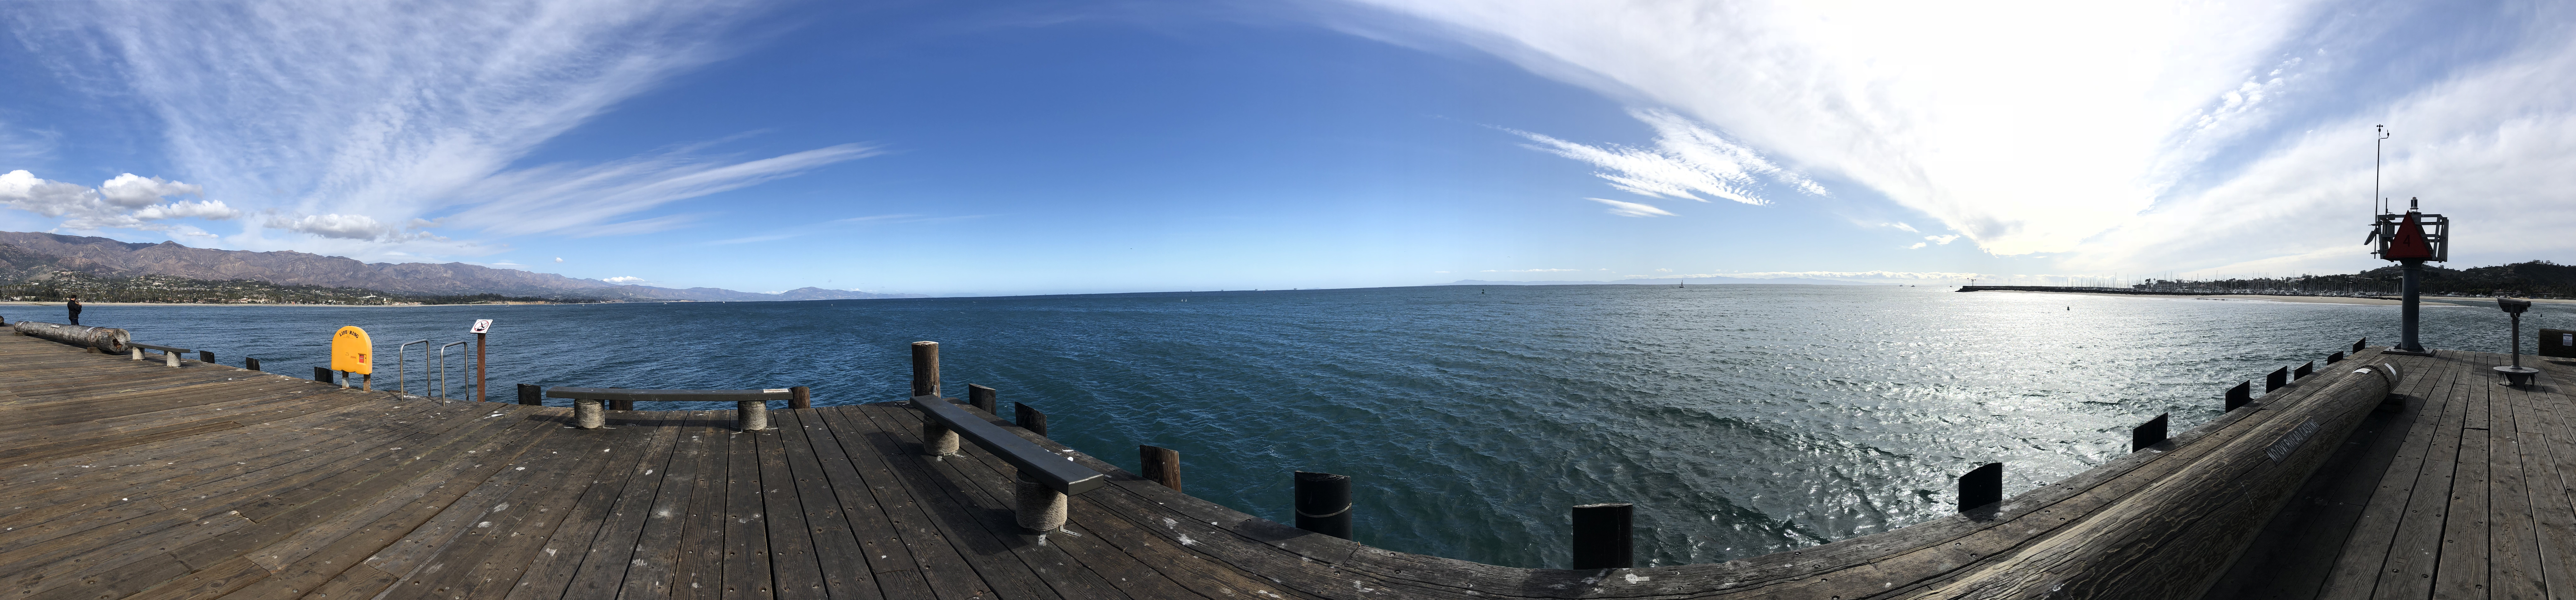 The view from Santa Barbara Pier